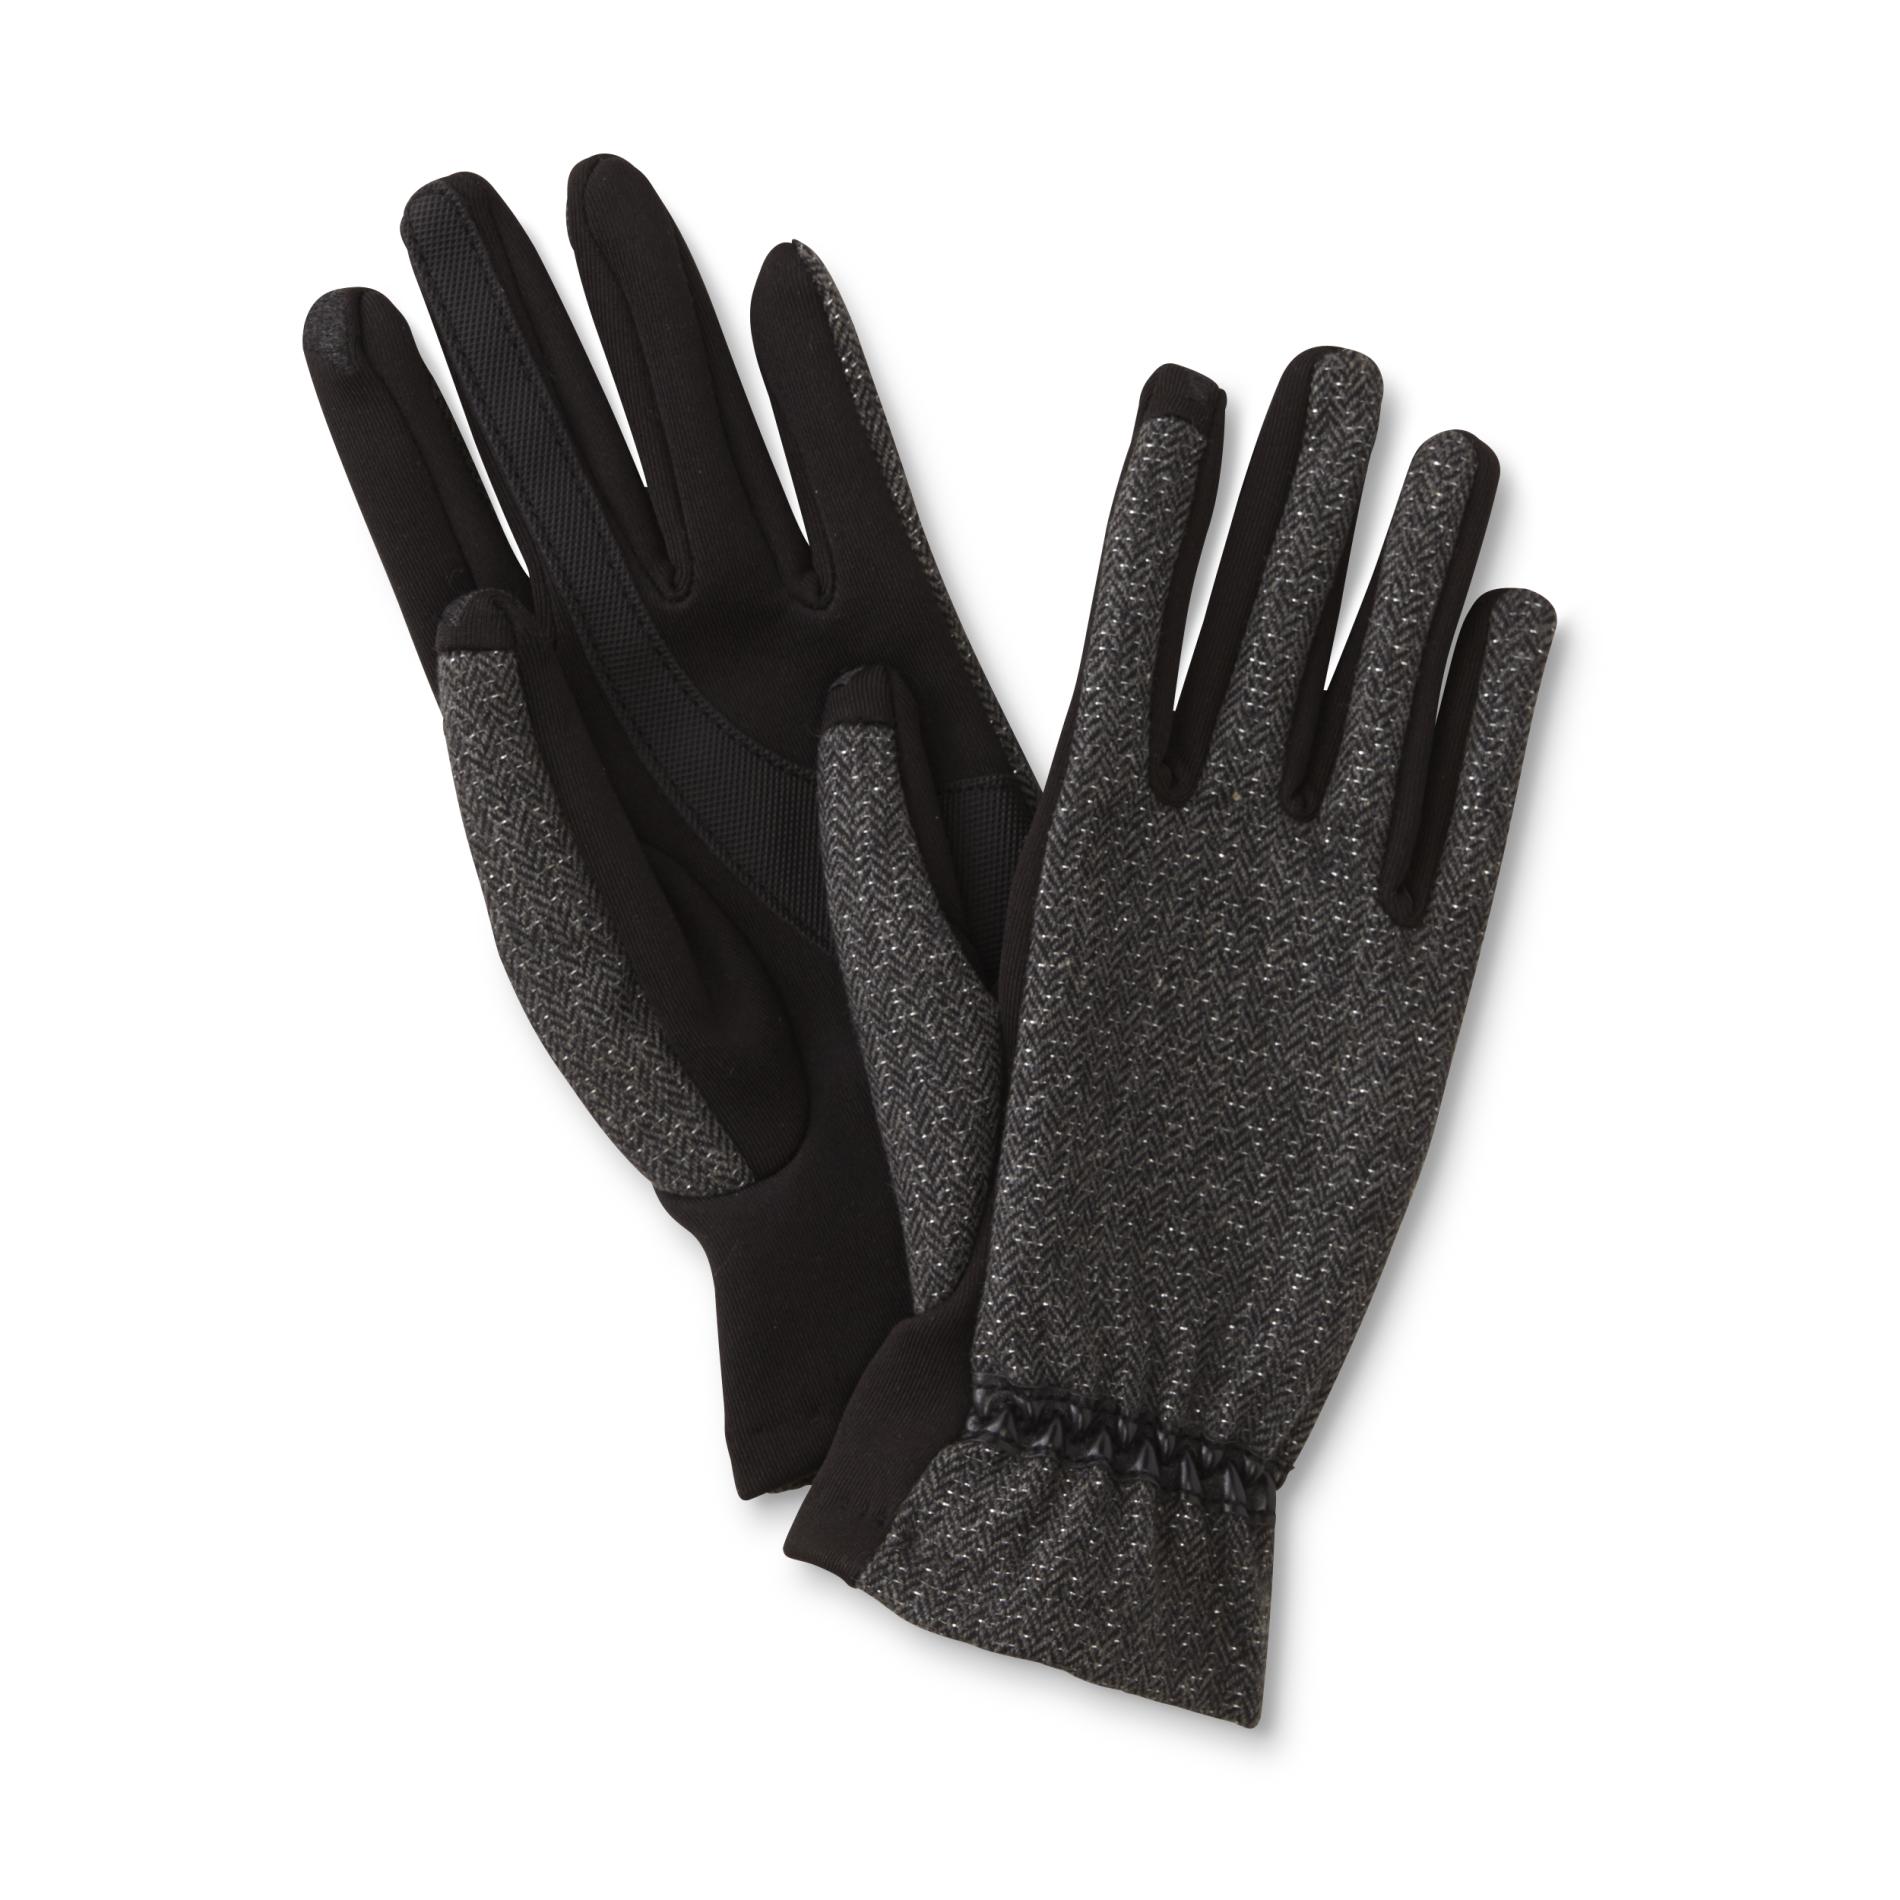 Isotoner Women's SmarTouch Dress Gloves - Herringbone